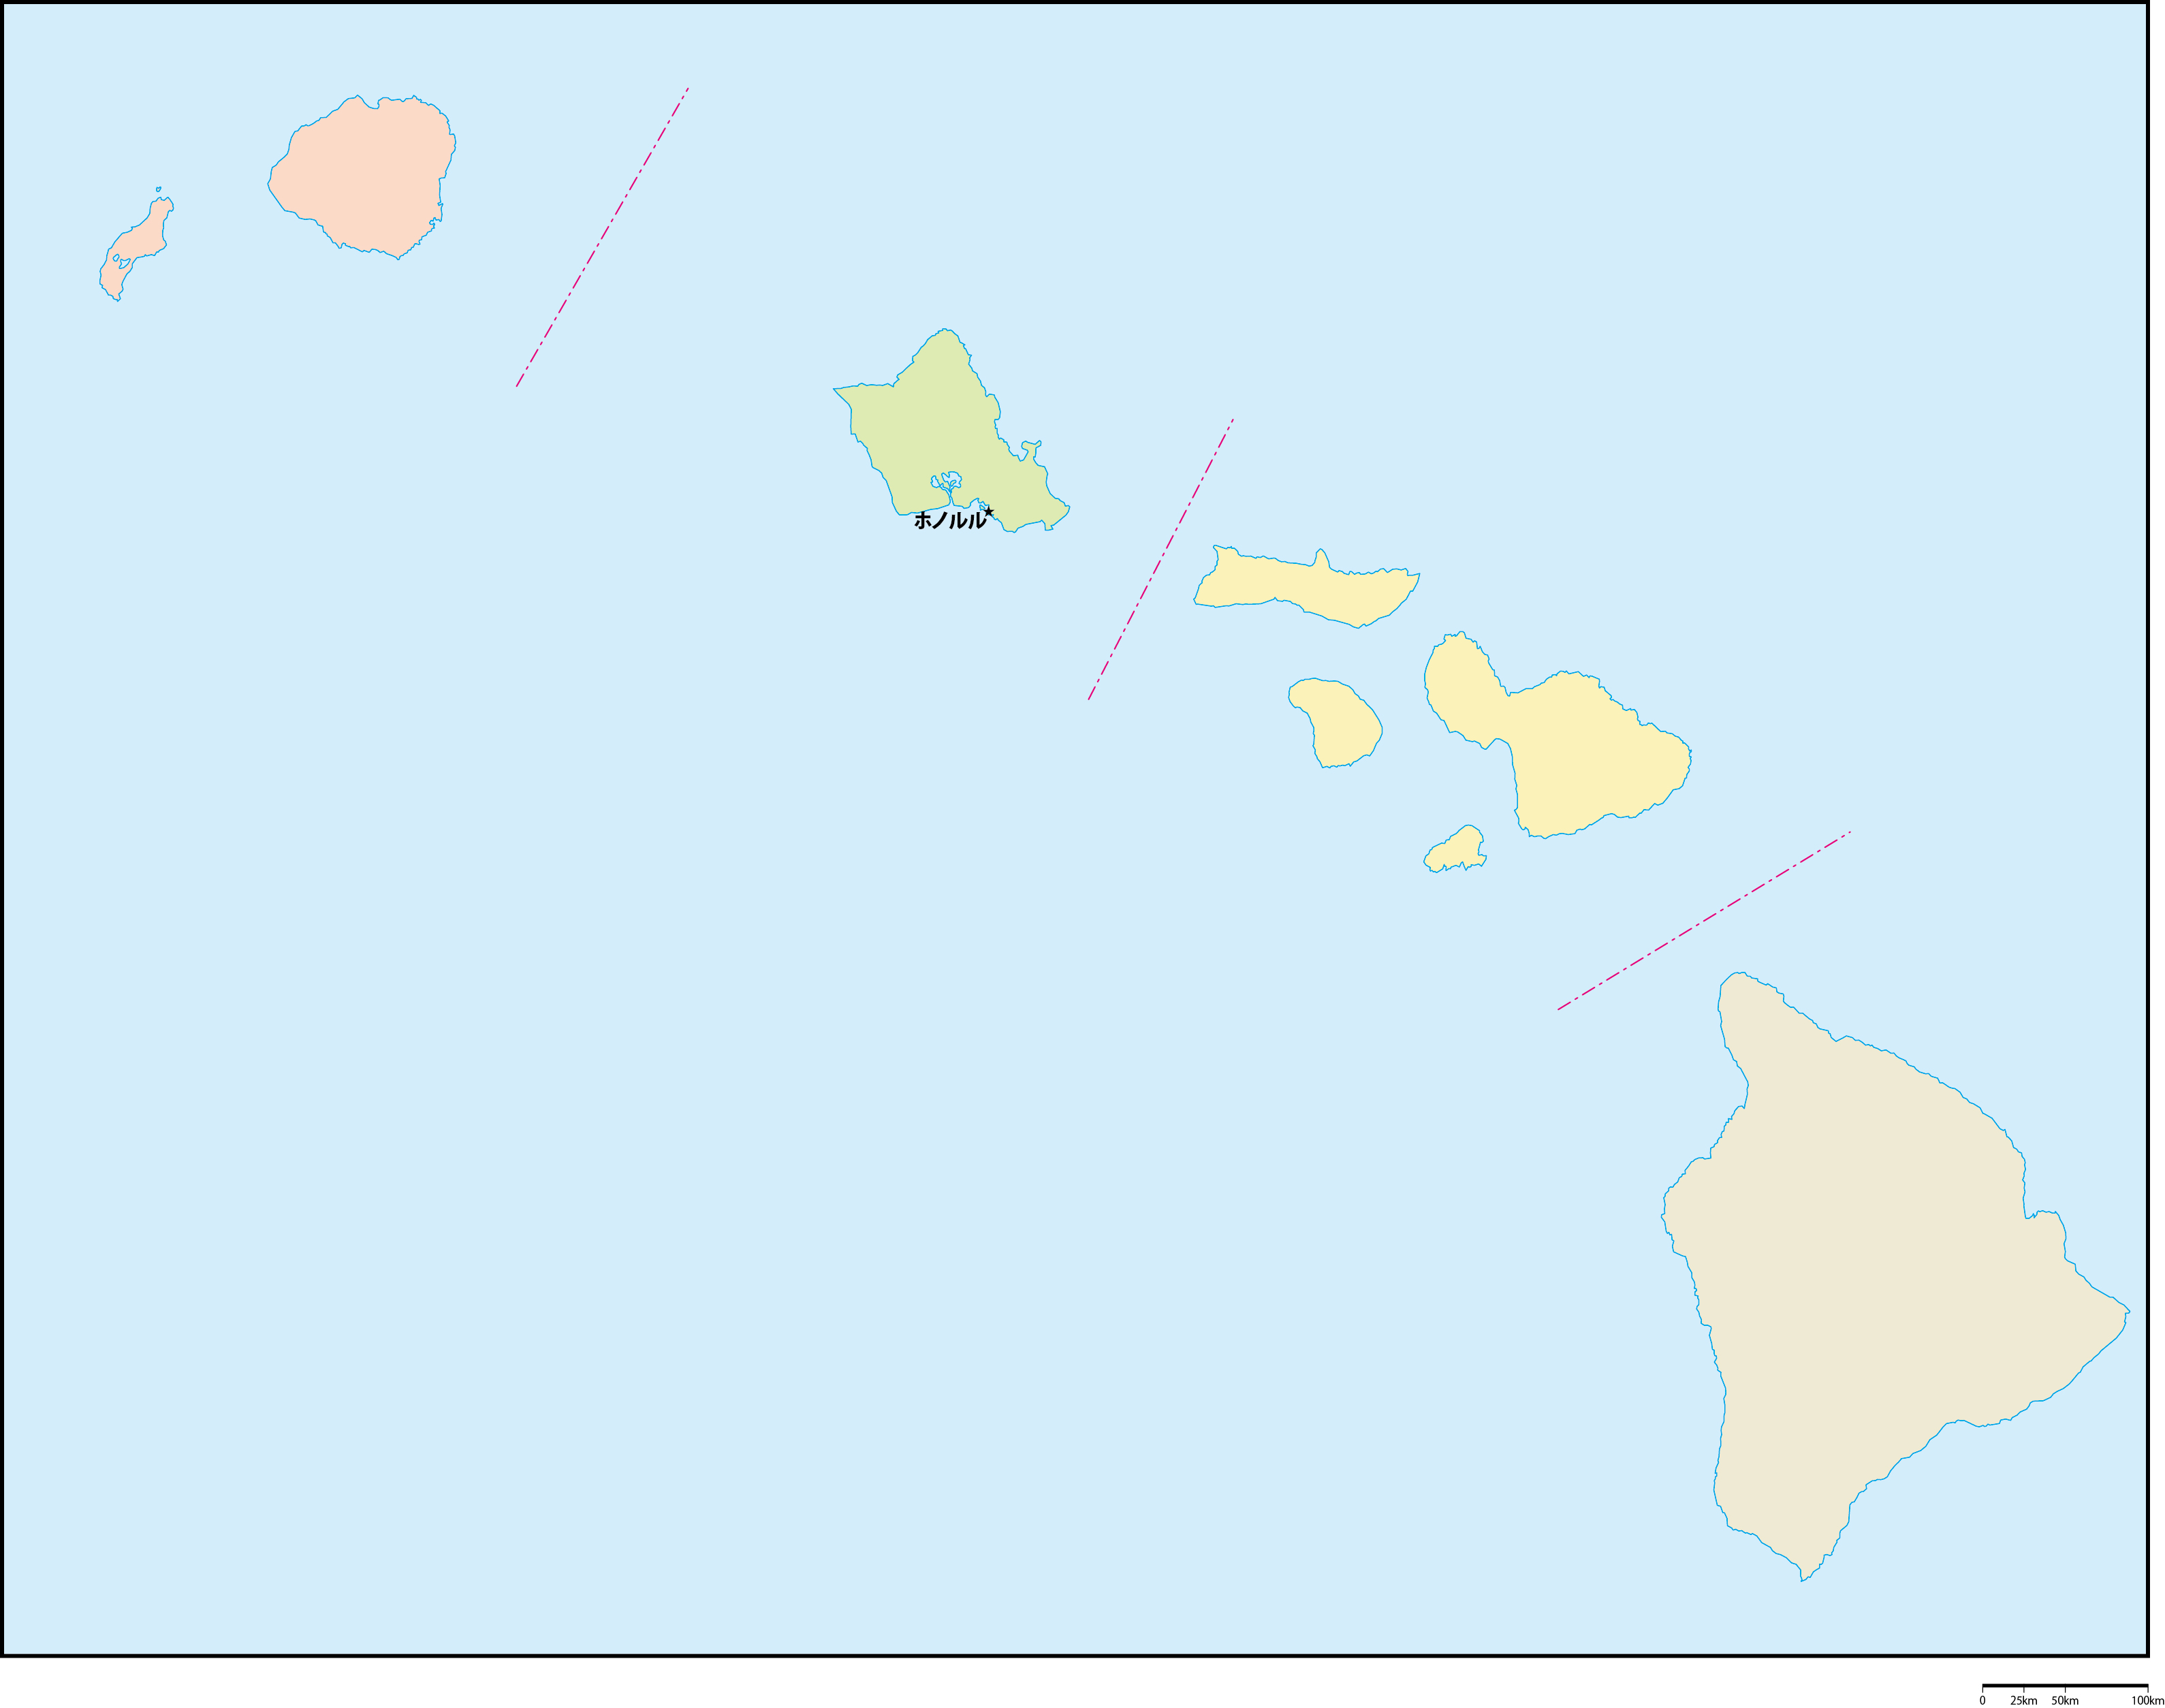 ハワイ州郡色分け地図州都あり(日本語)フリーデータの画像